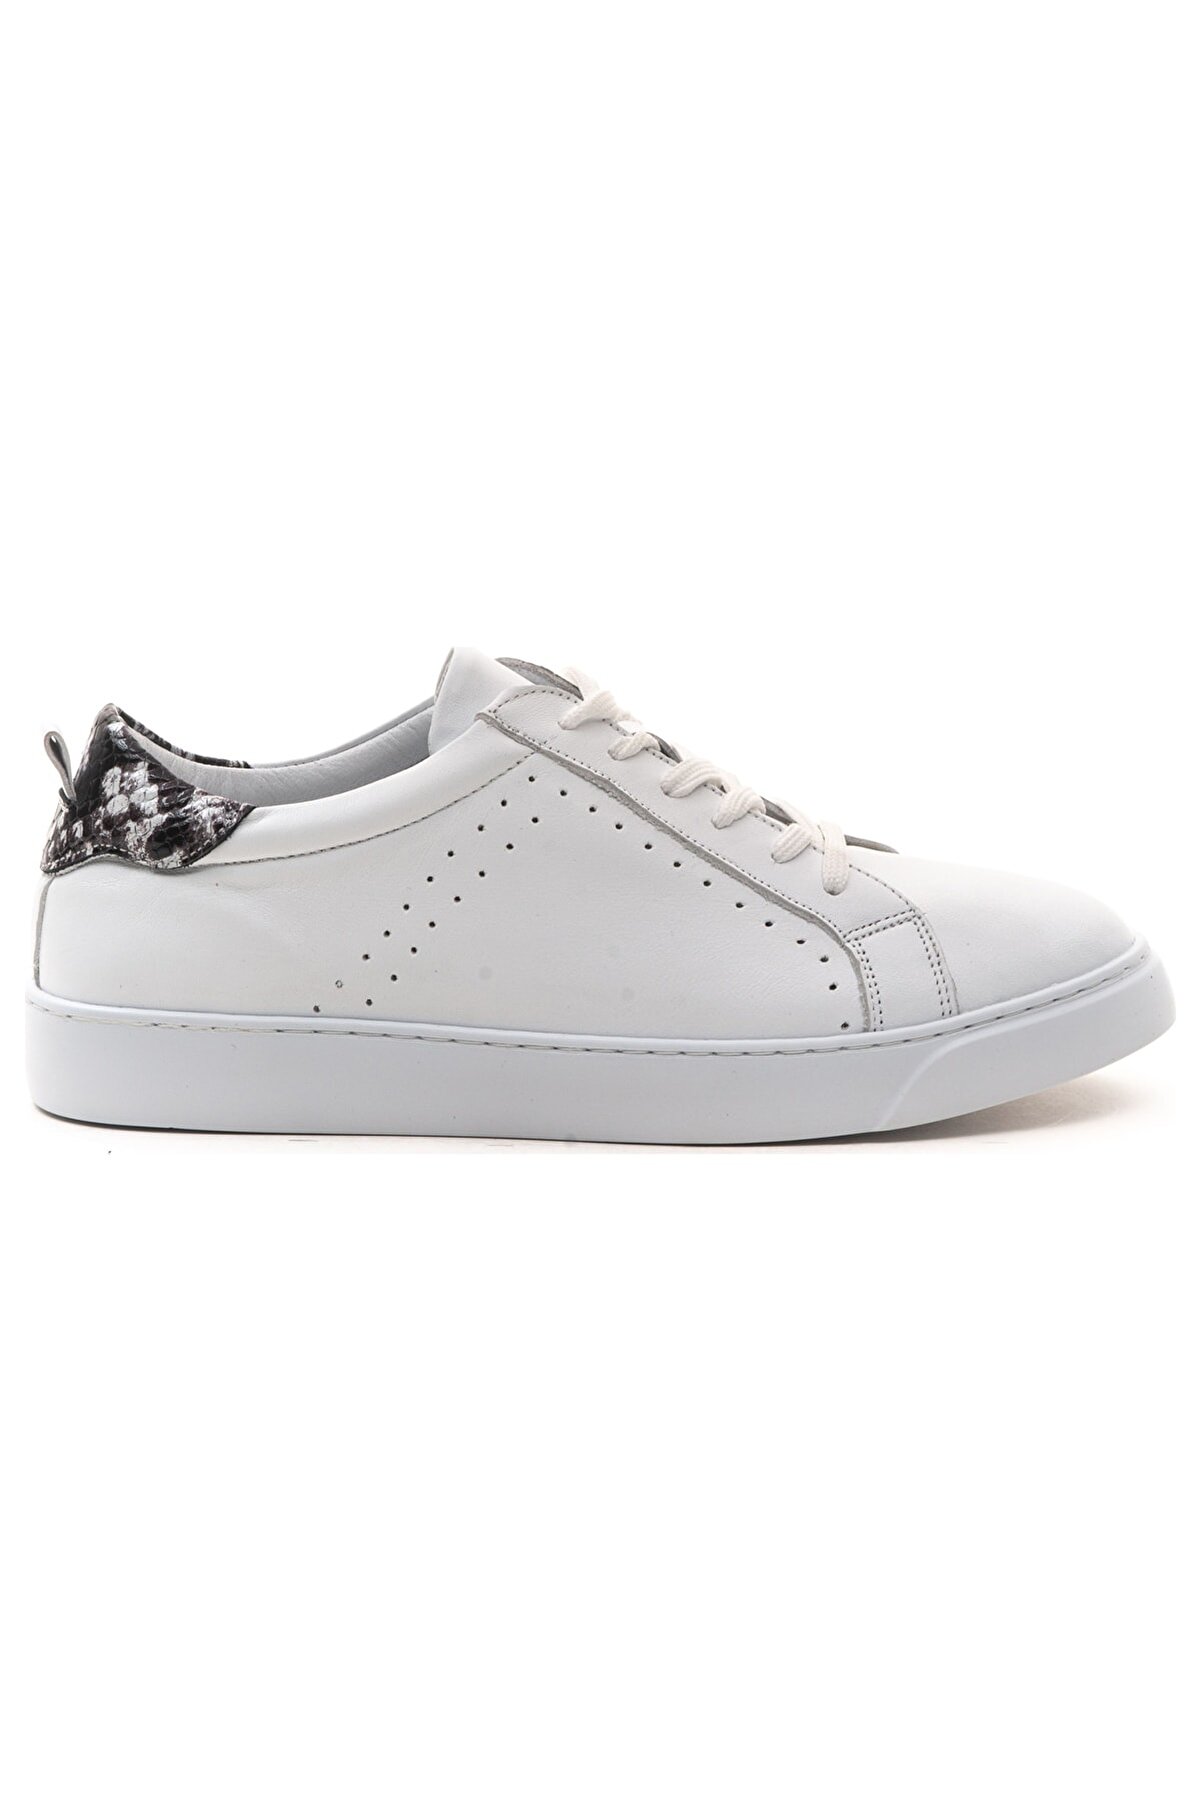 GRADA Beyaz ve Yılan Desenli Hakiki Deri Bağcıklı Sneaker Ayakkabı